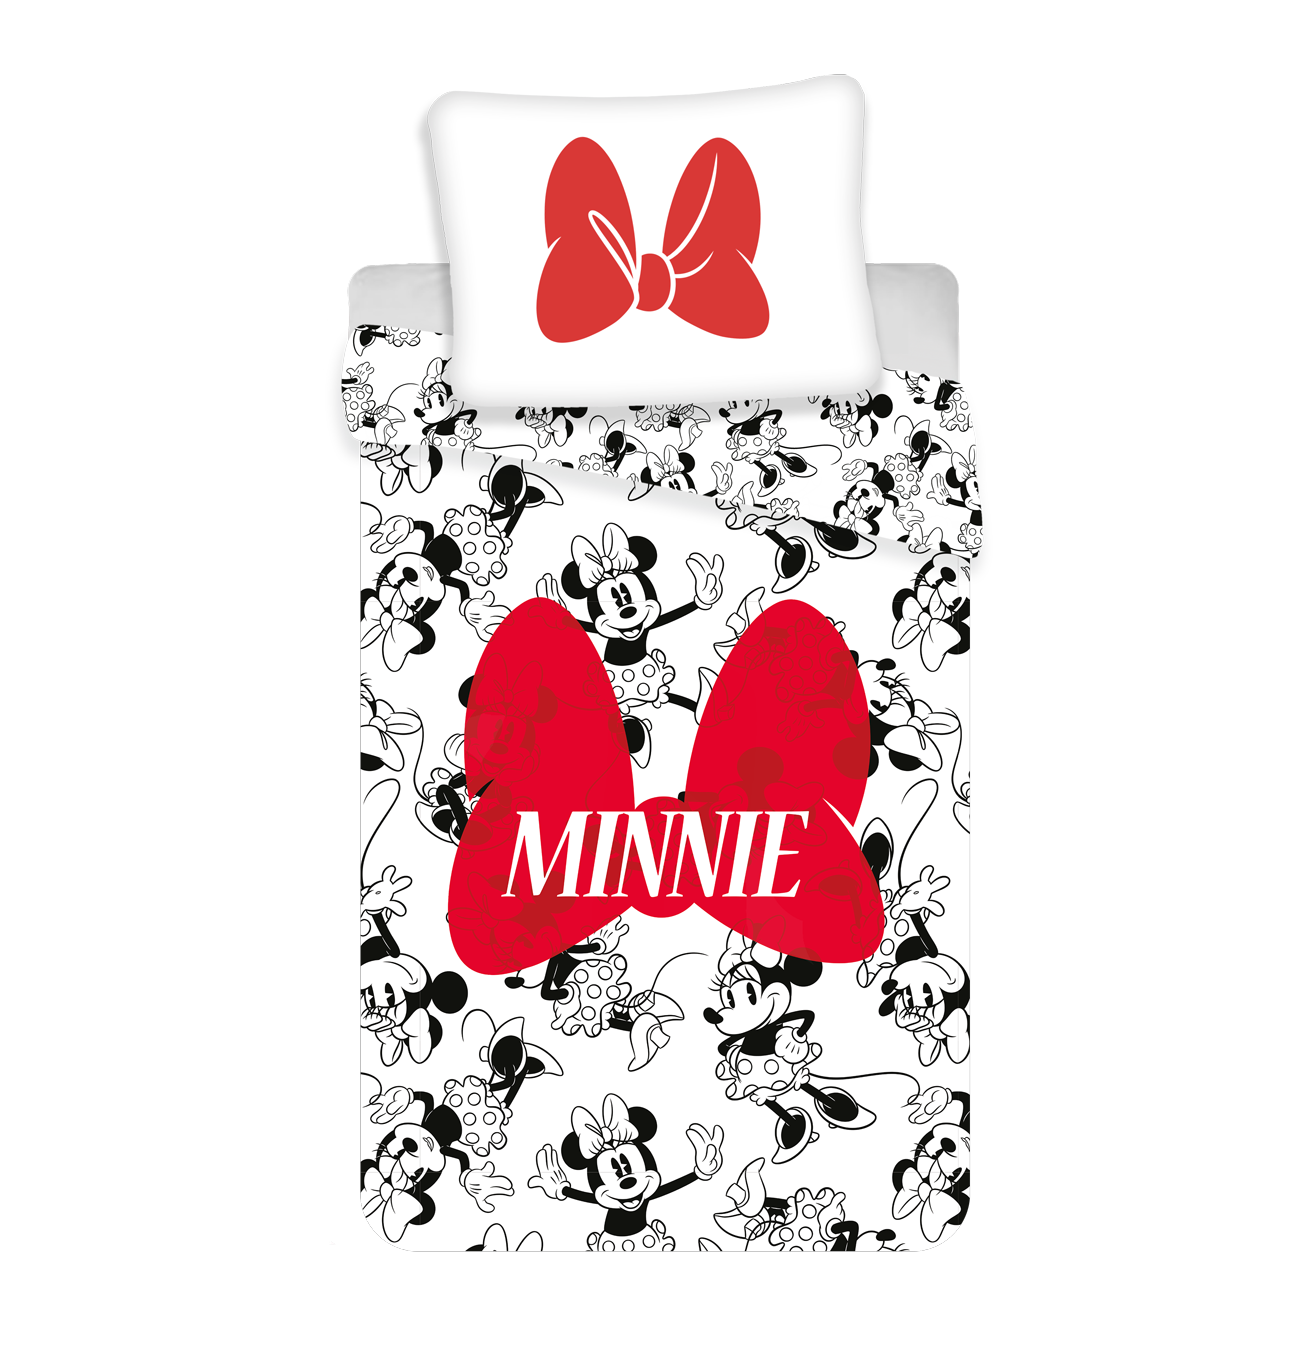 Obliečky Minnie red bow Jerry Fabrics